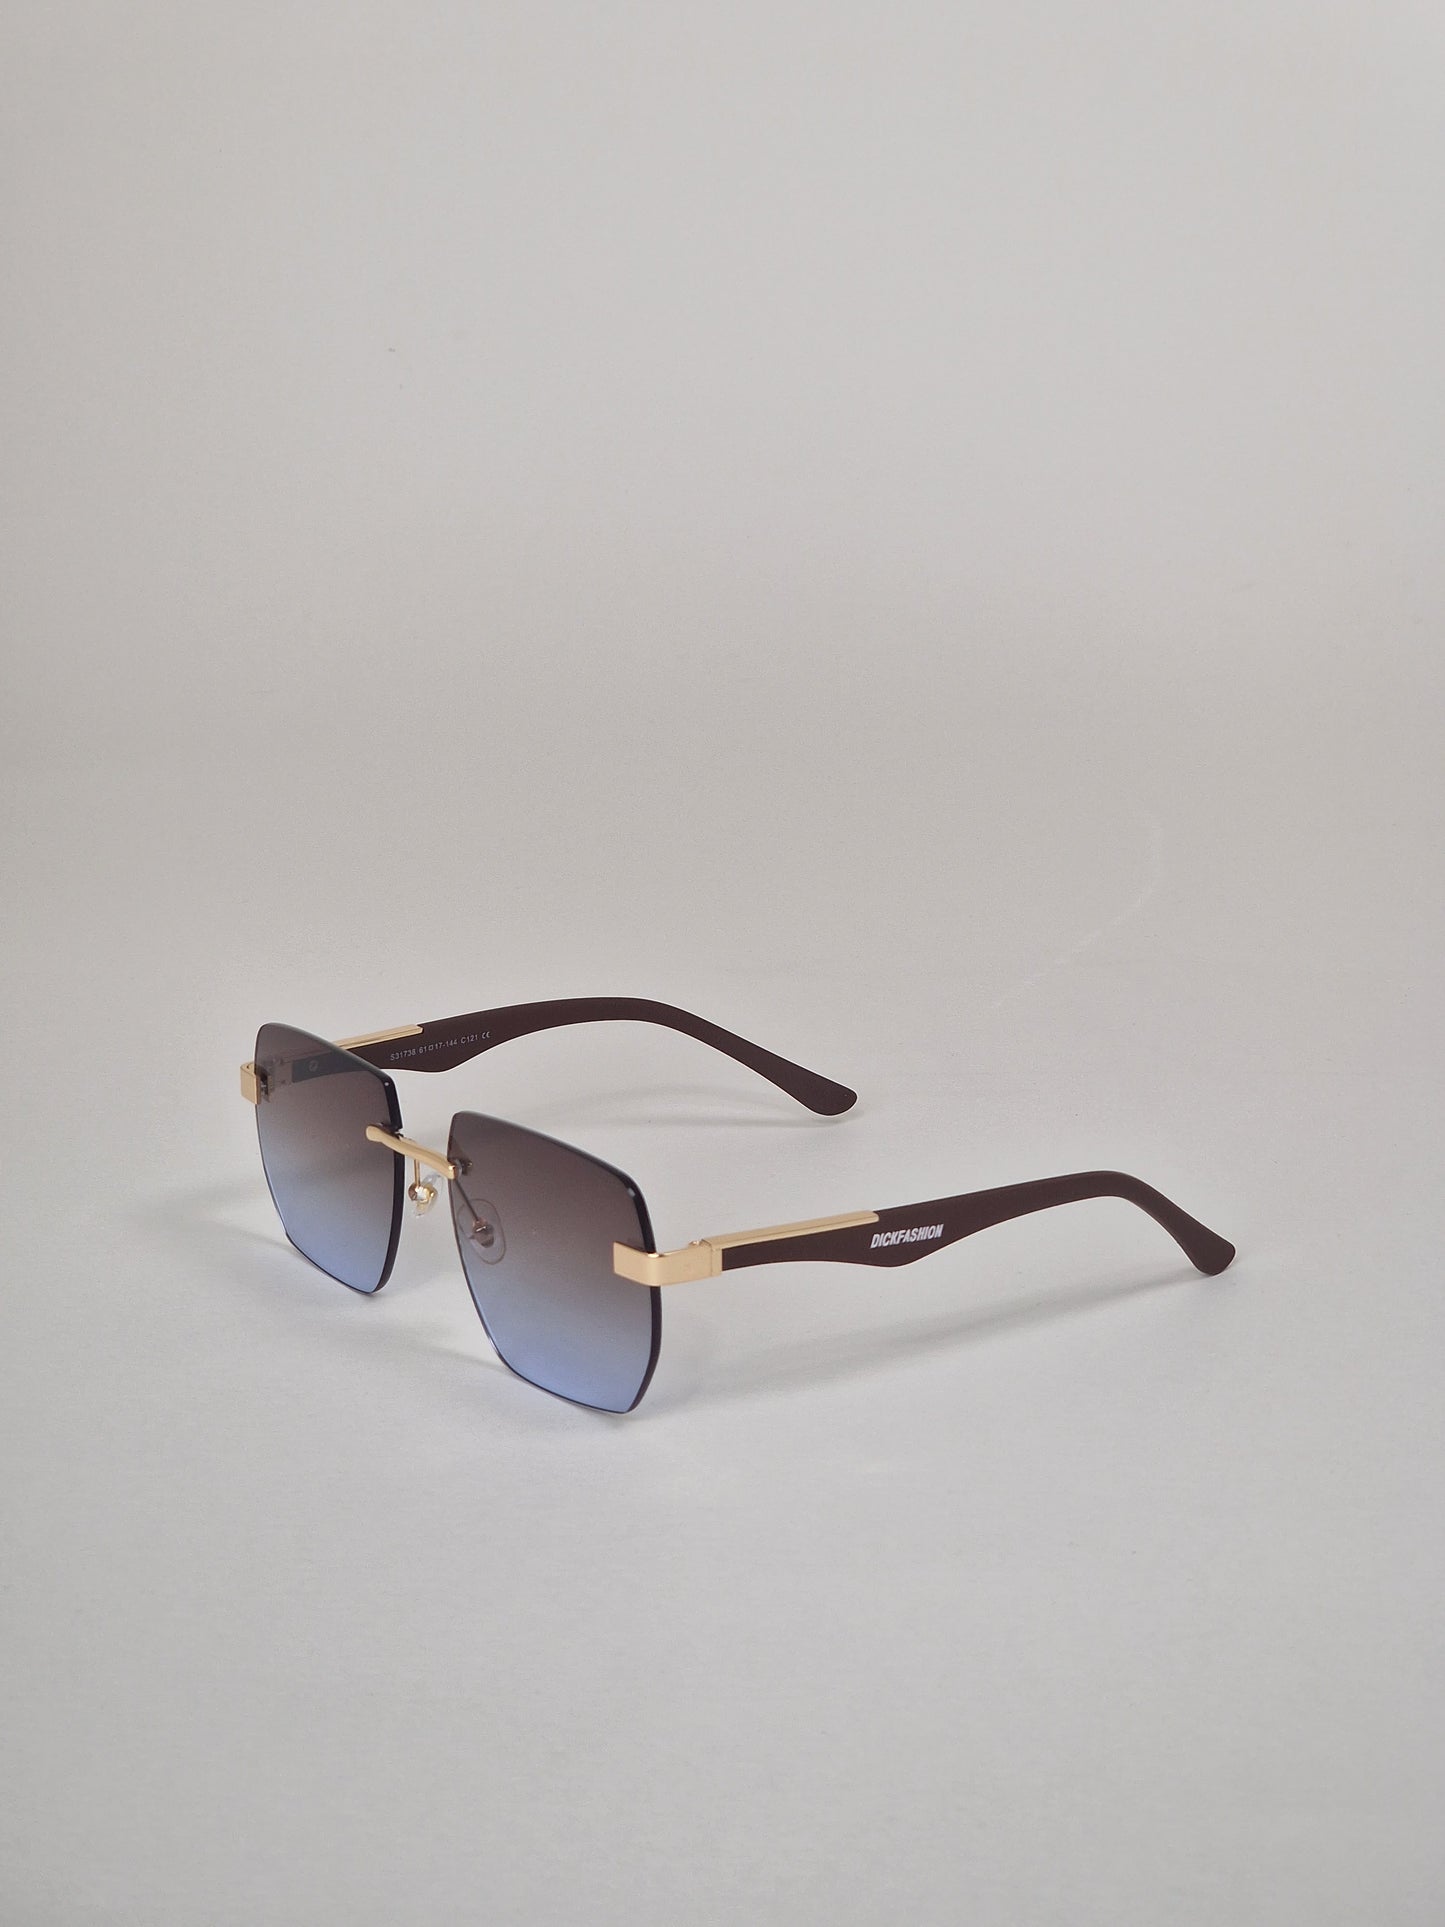 Solglasögon, modell 4 - Brun/blå Tintade.